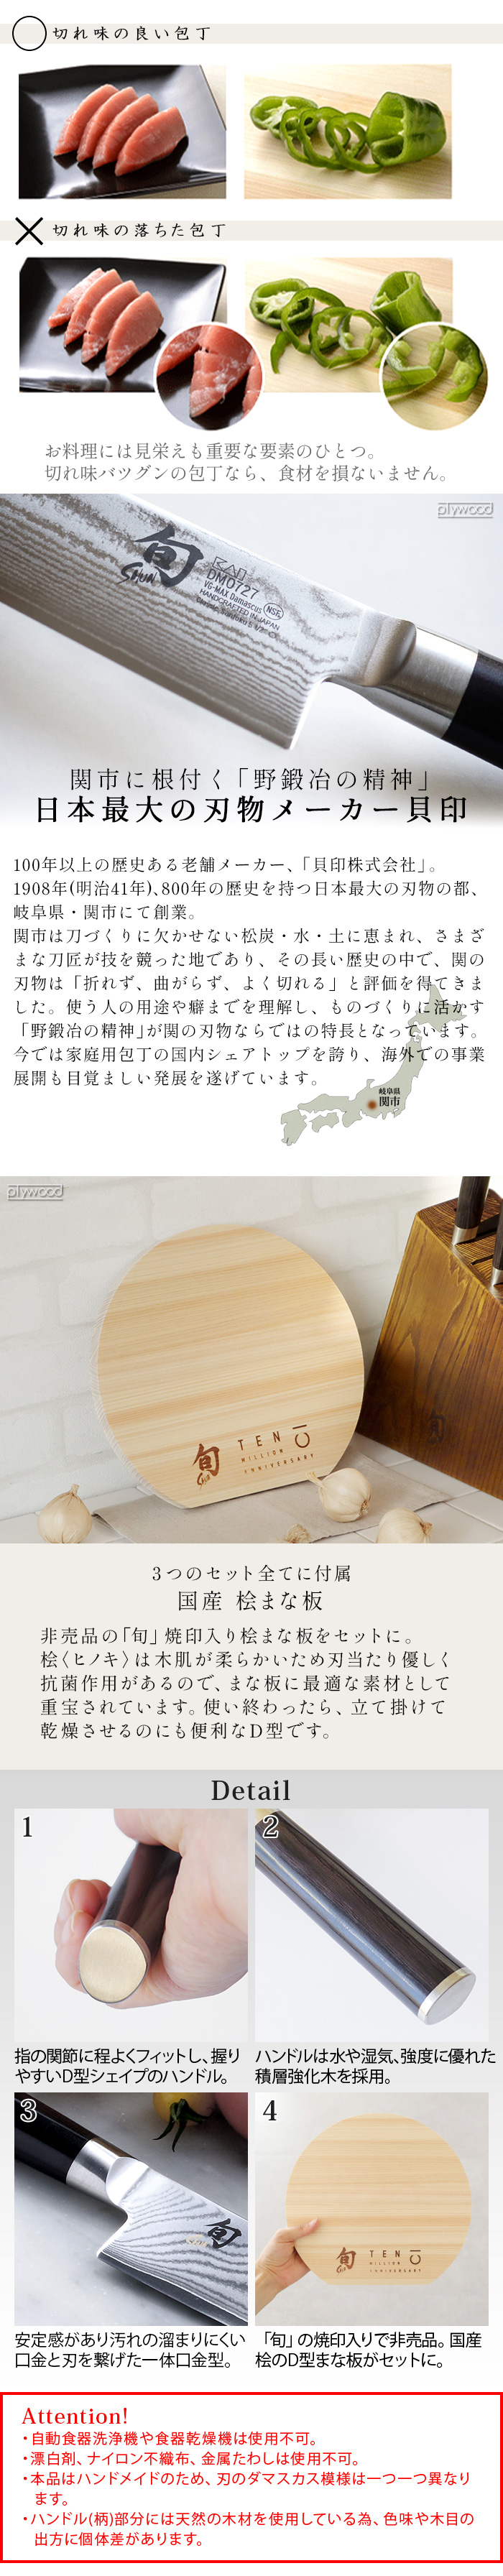 旬 Classic クラシック 1000万丁記念 三徳セット Shun Classic DMS0310